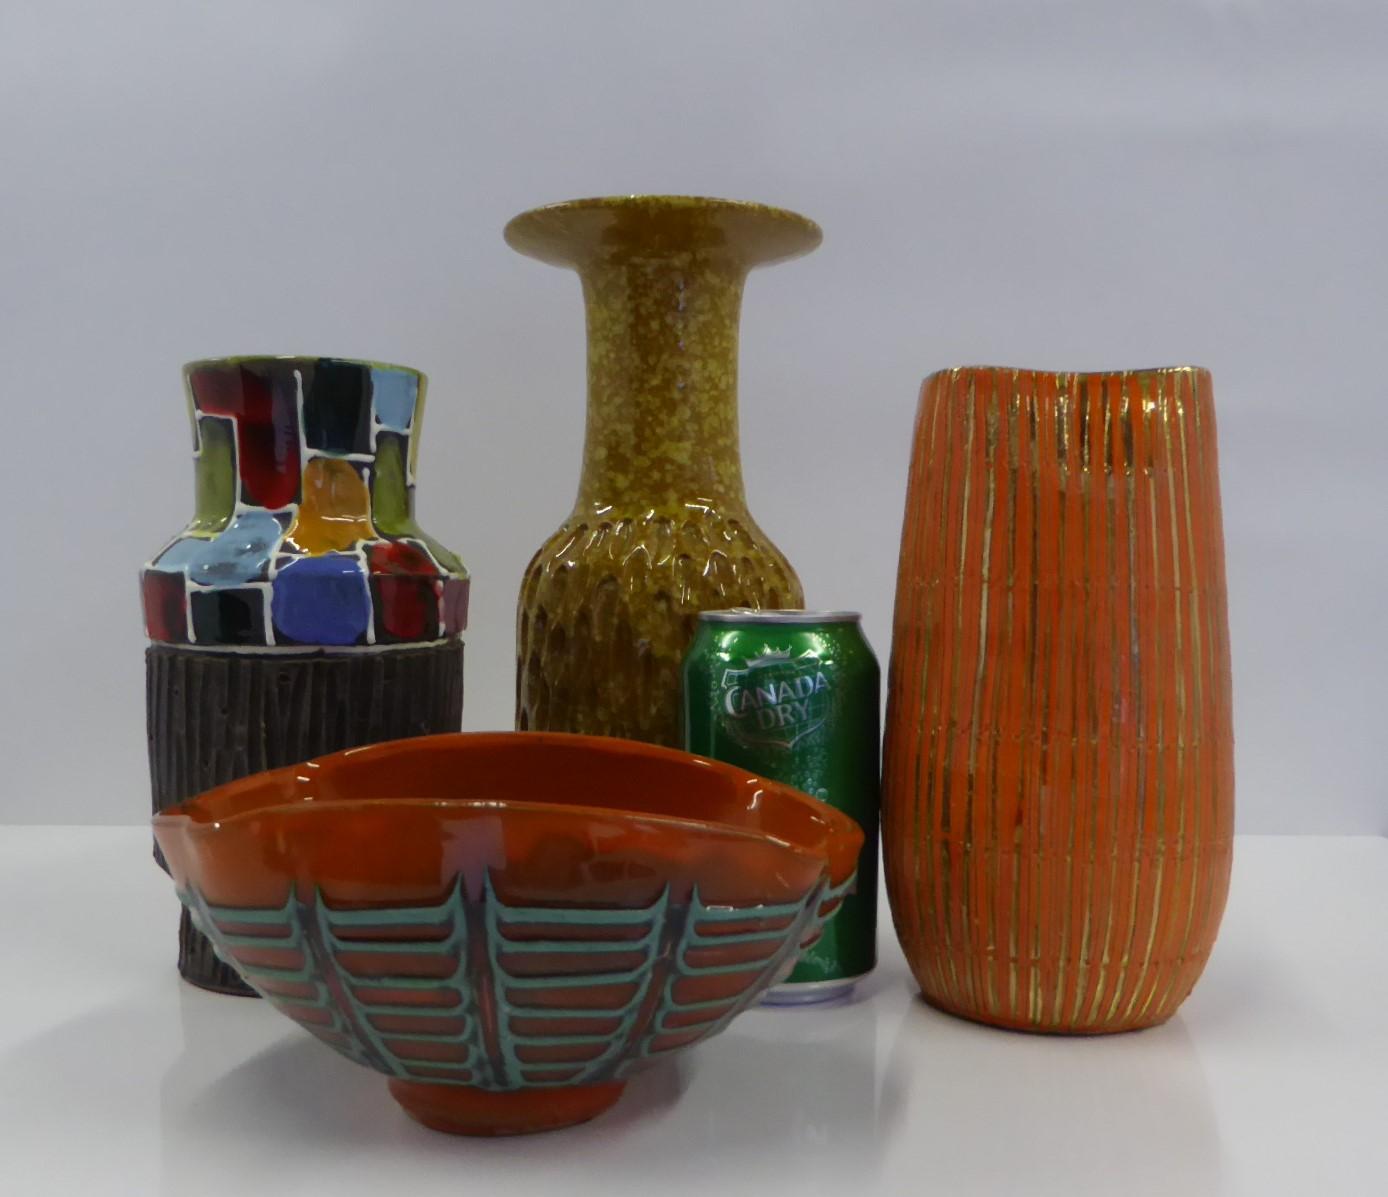 Aldo Londi Seta Series for Bitossi Modern Sgraffito Ceramic Vase, Italy, 1950s For Sale 4